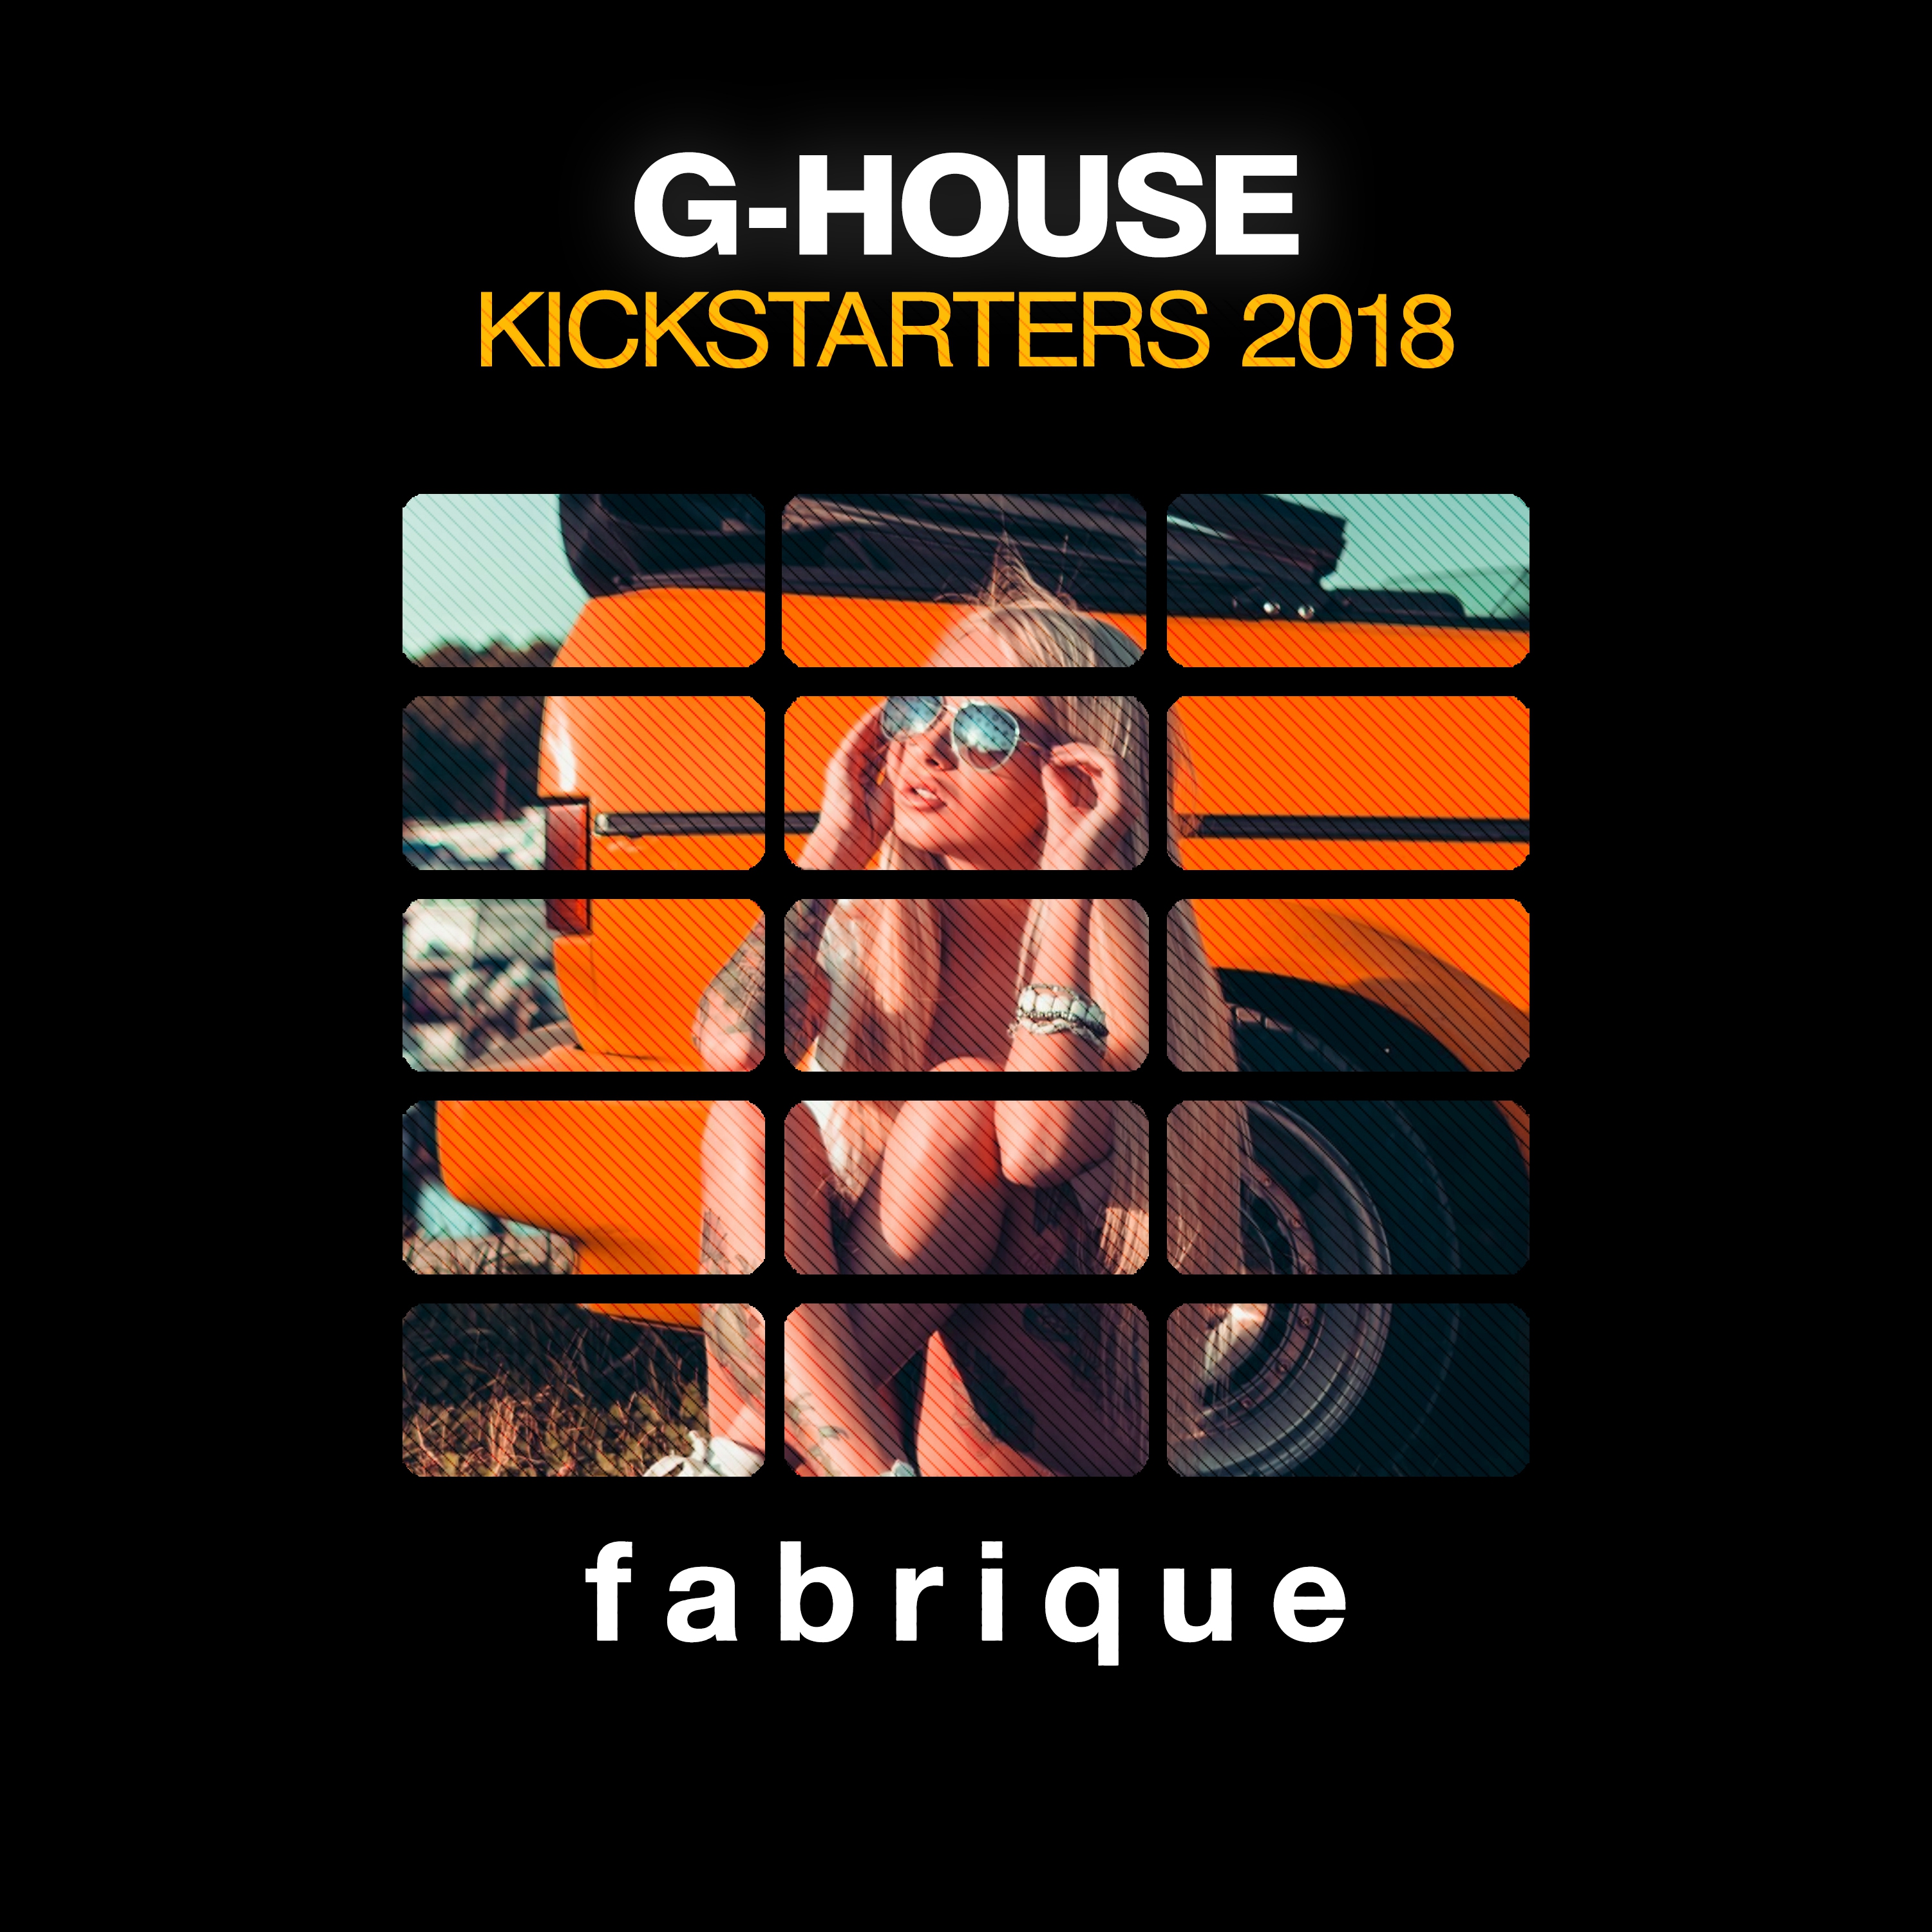 G-House Kickstarters 2018